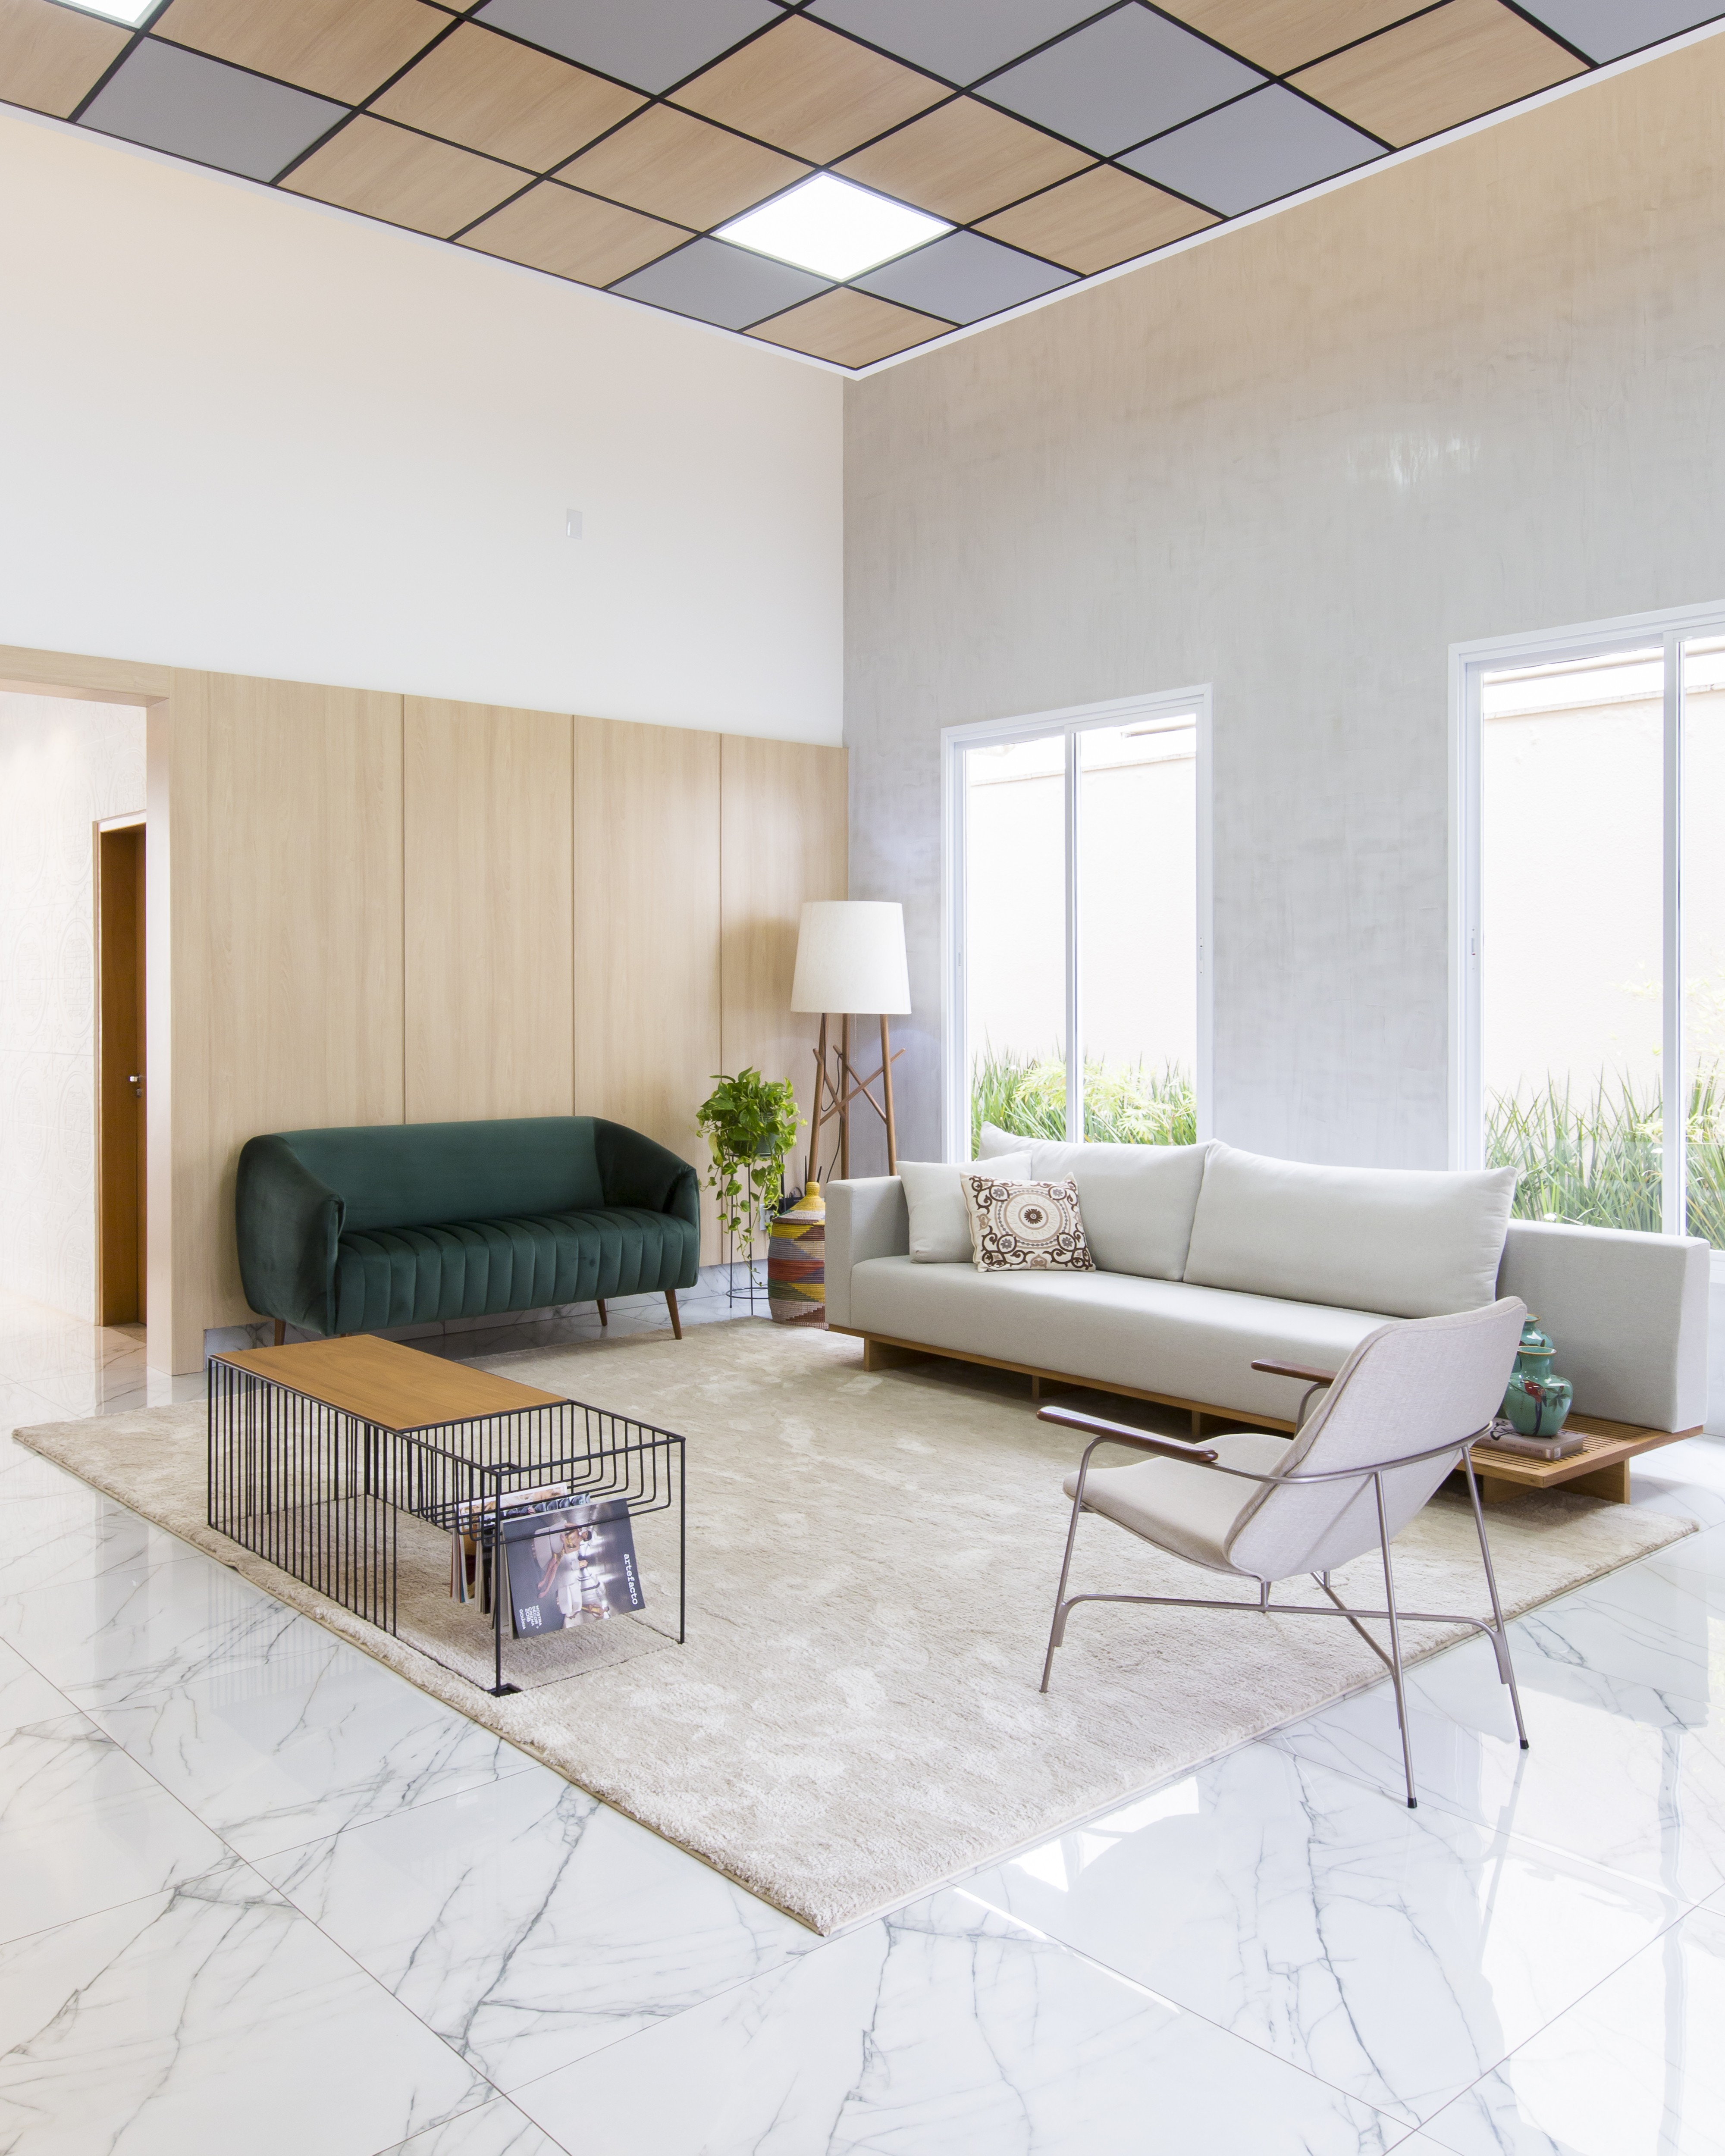 Décor do dia: sala com estilo minimalista reúne sofá verde, plantas e cestaria (Foto: Isabela Dutra)